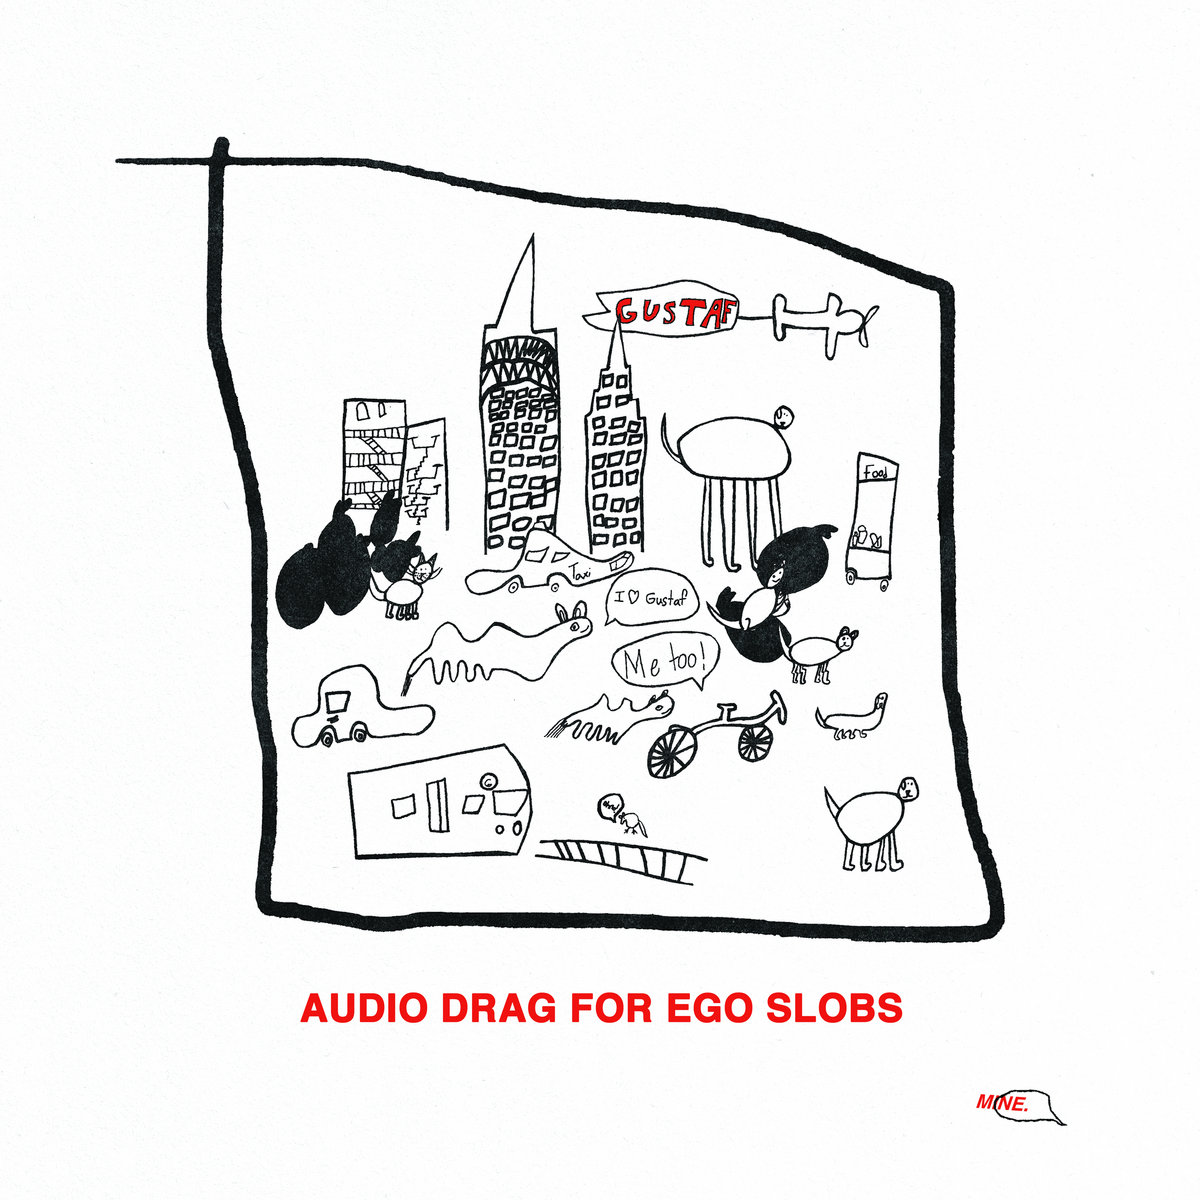 Gustaf Audio Drag for Ego Slobs